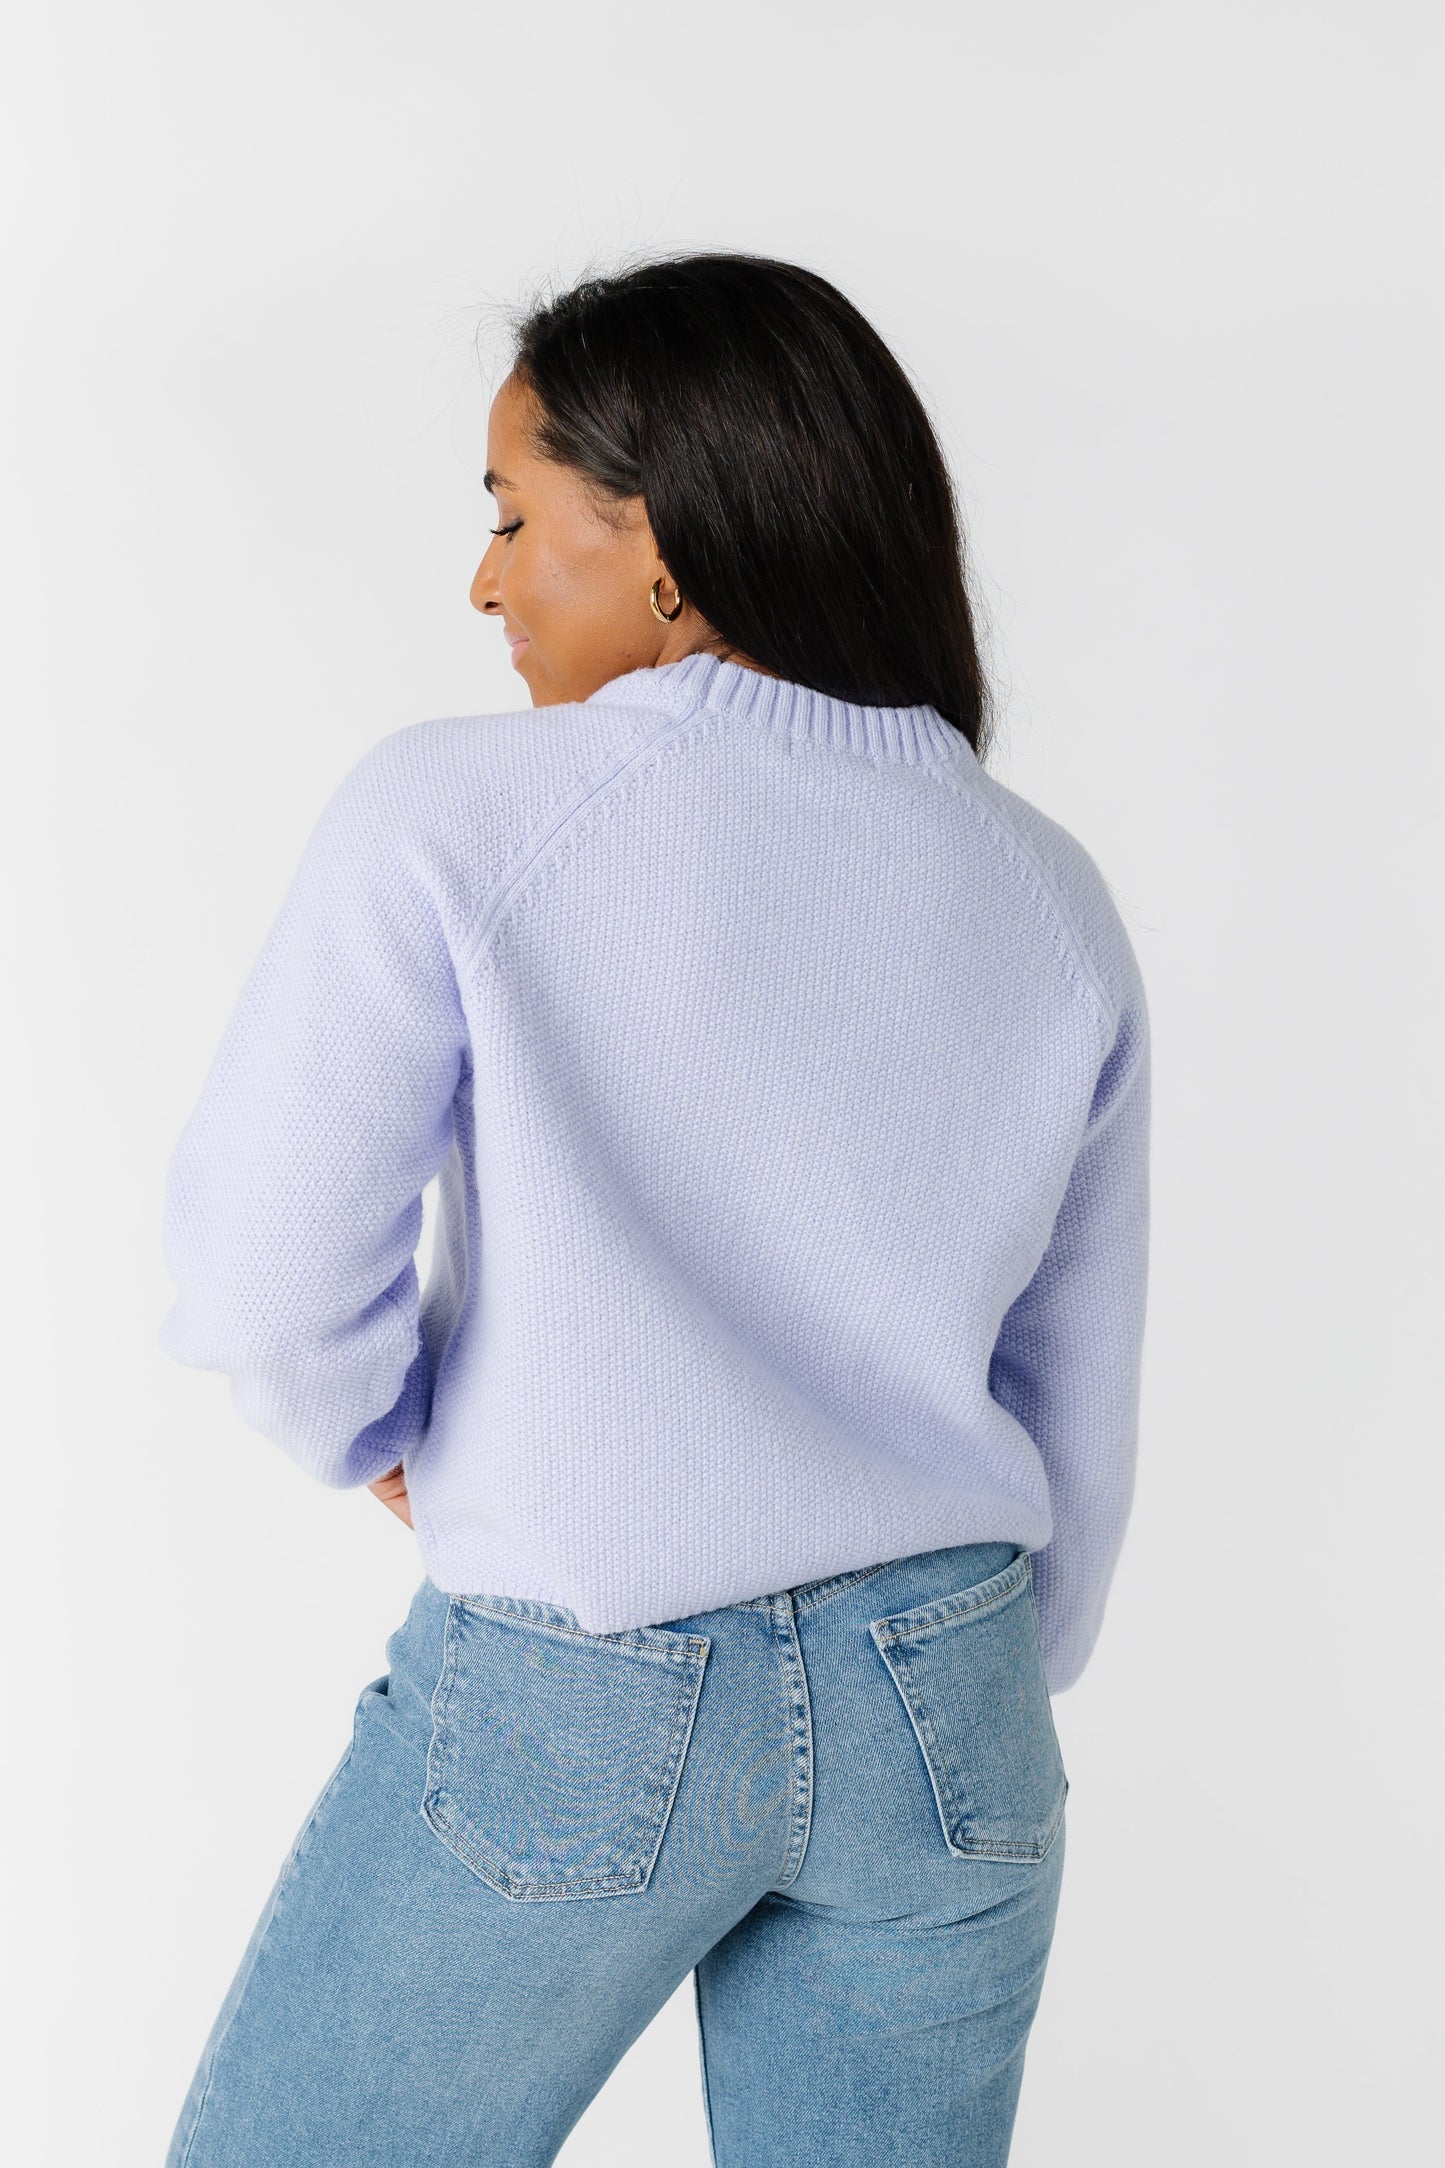 The Faye Sweater WOMEN'S SWEATERS Mod Ref 